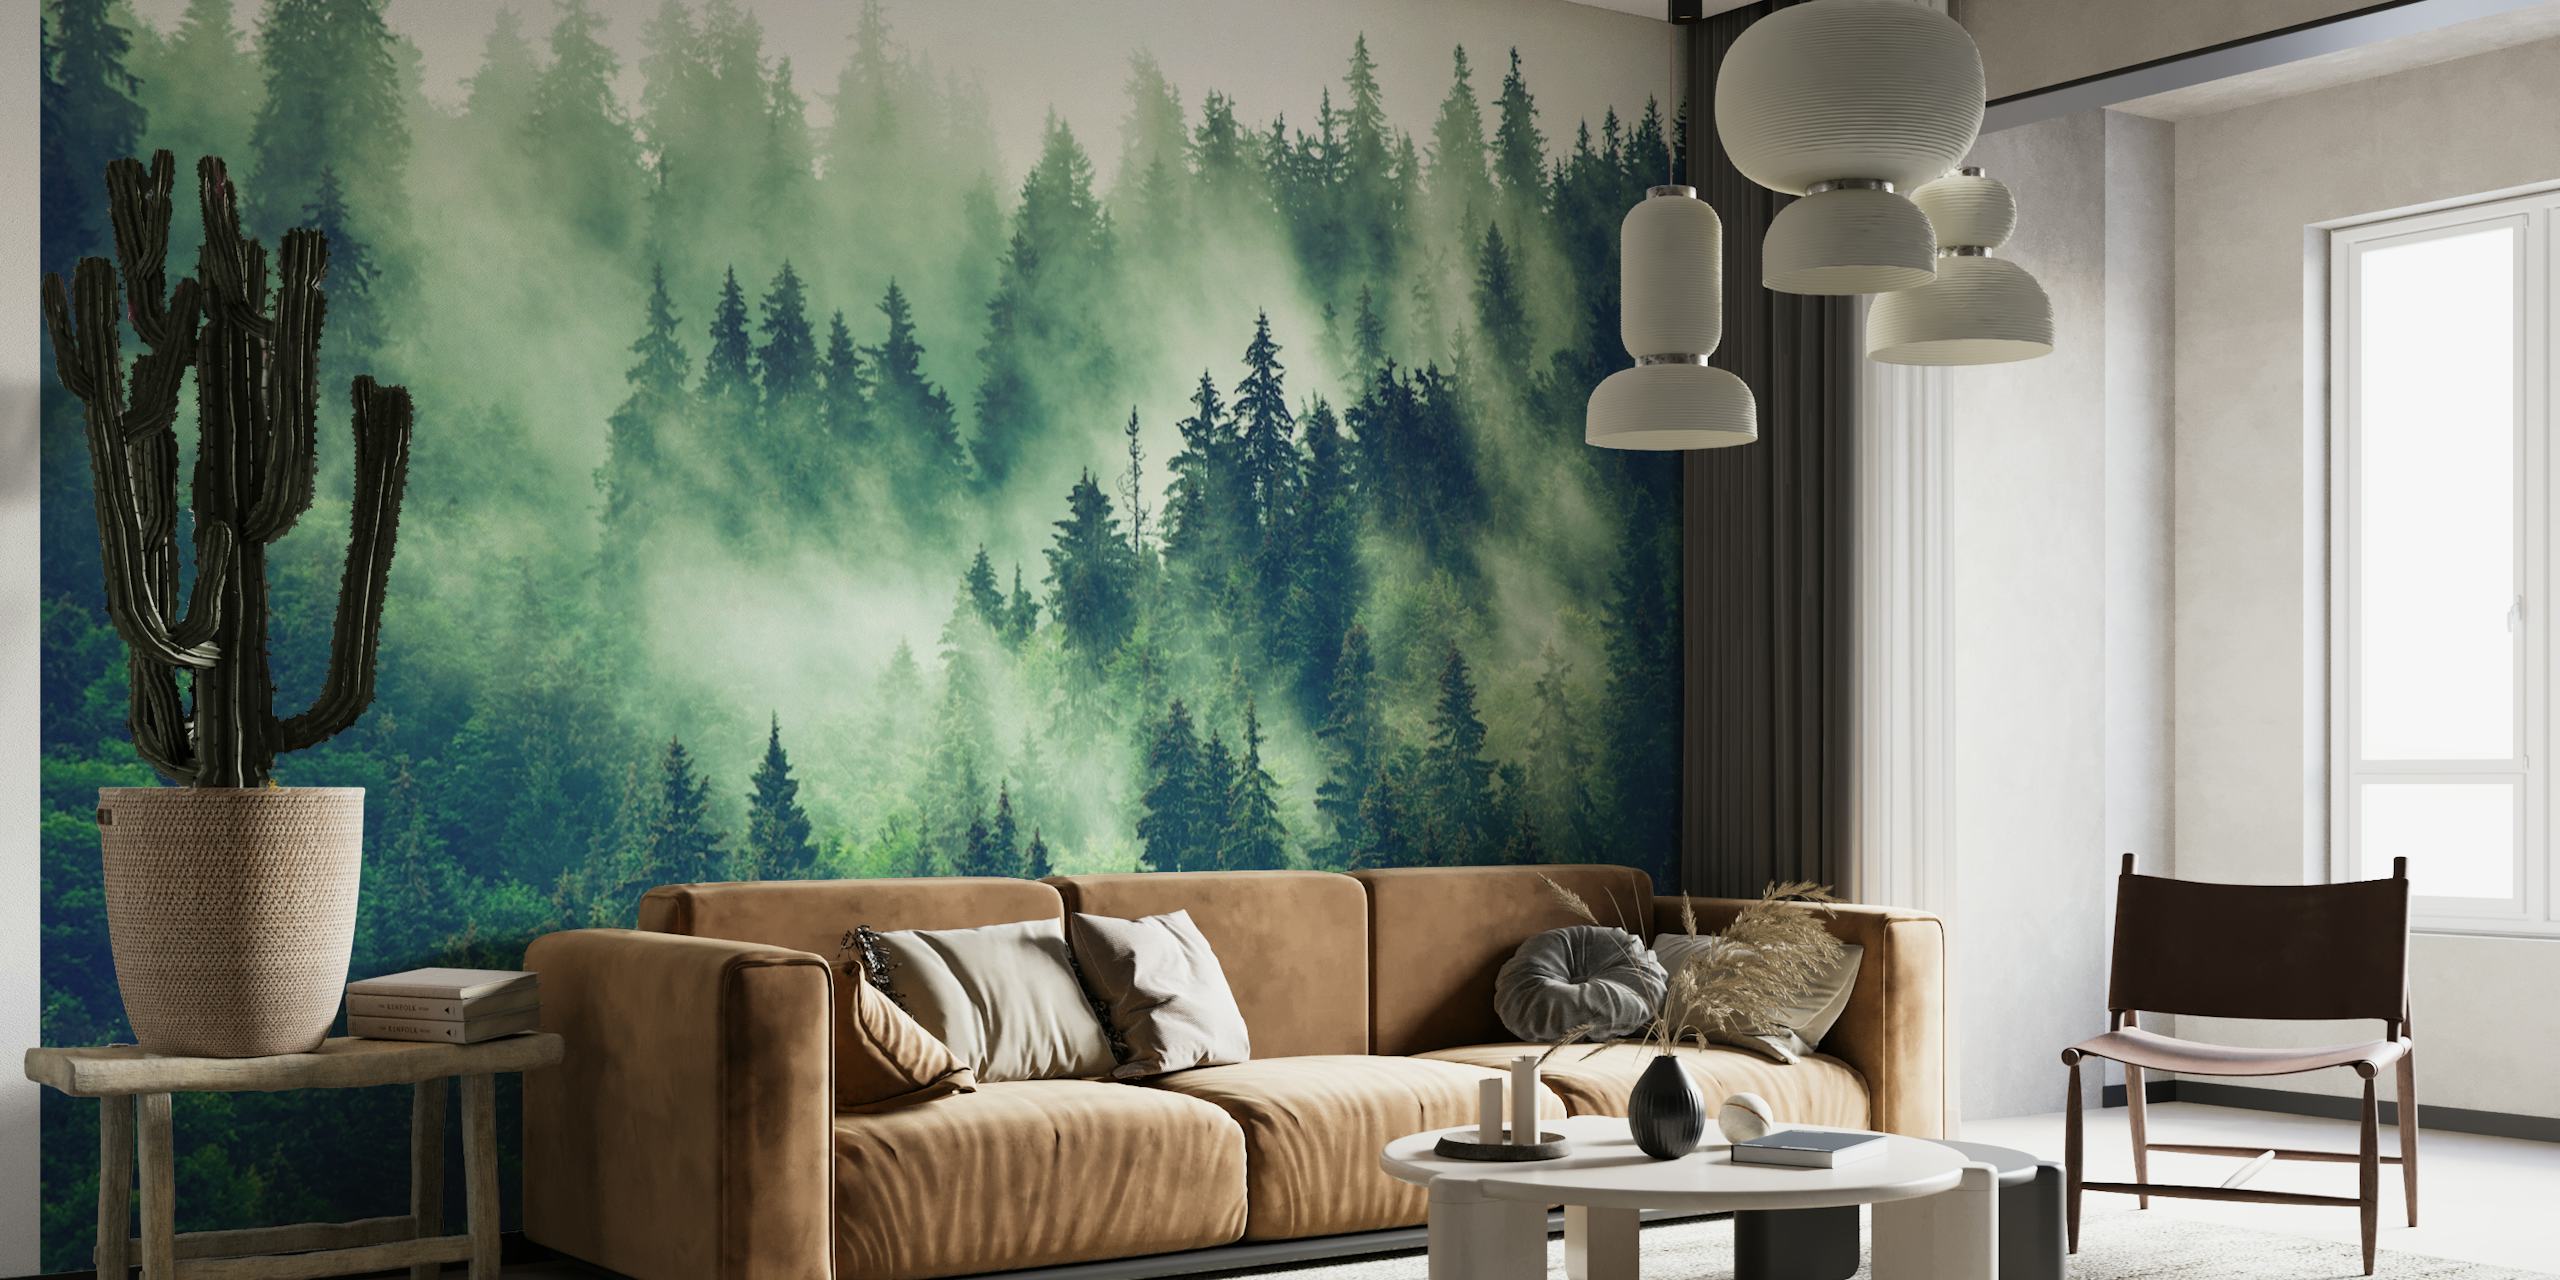 Misty fir forest wallpaper